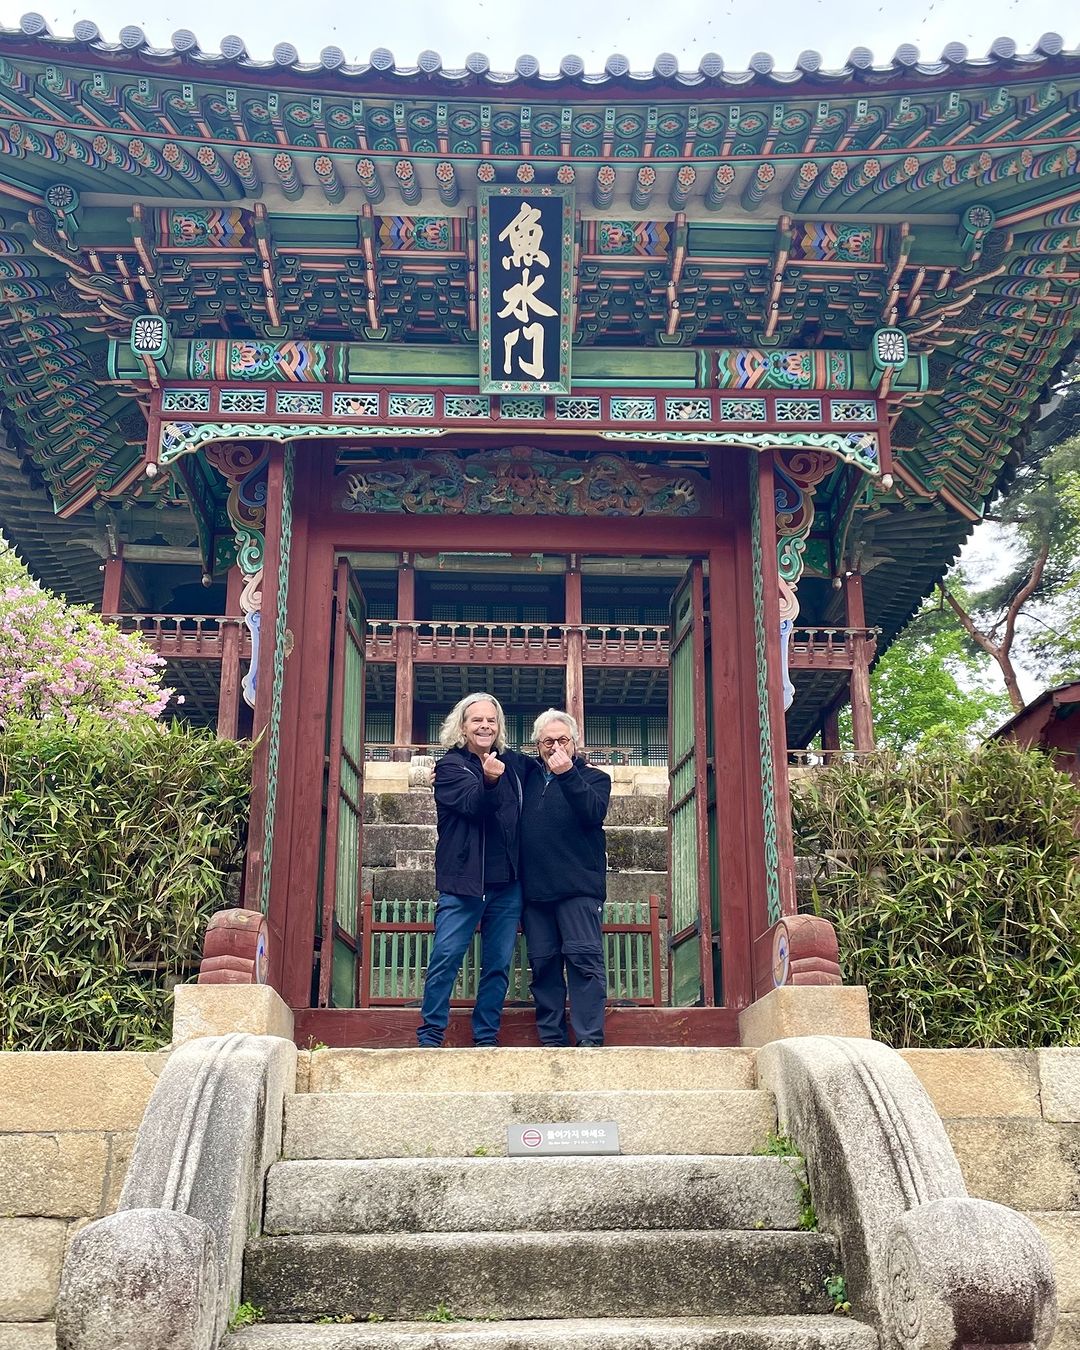 [#조지밀러감독 PICK!] I ♥ KOREA 코스 (1)',매드맥스', 시리즈의 아버지 조지 밀러 감독이 퓨리오사- 매드맥스 사가로 한국을 찾았습니다. 그는 공식 행사가 끝난 후 창덕궁에서 즐거운 시간을 .jpg